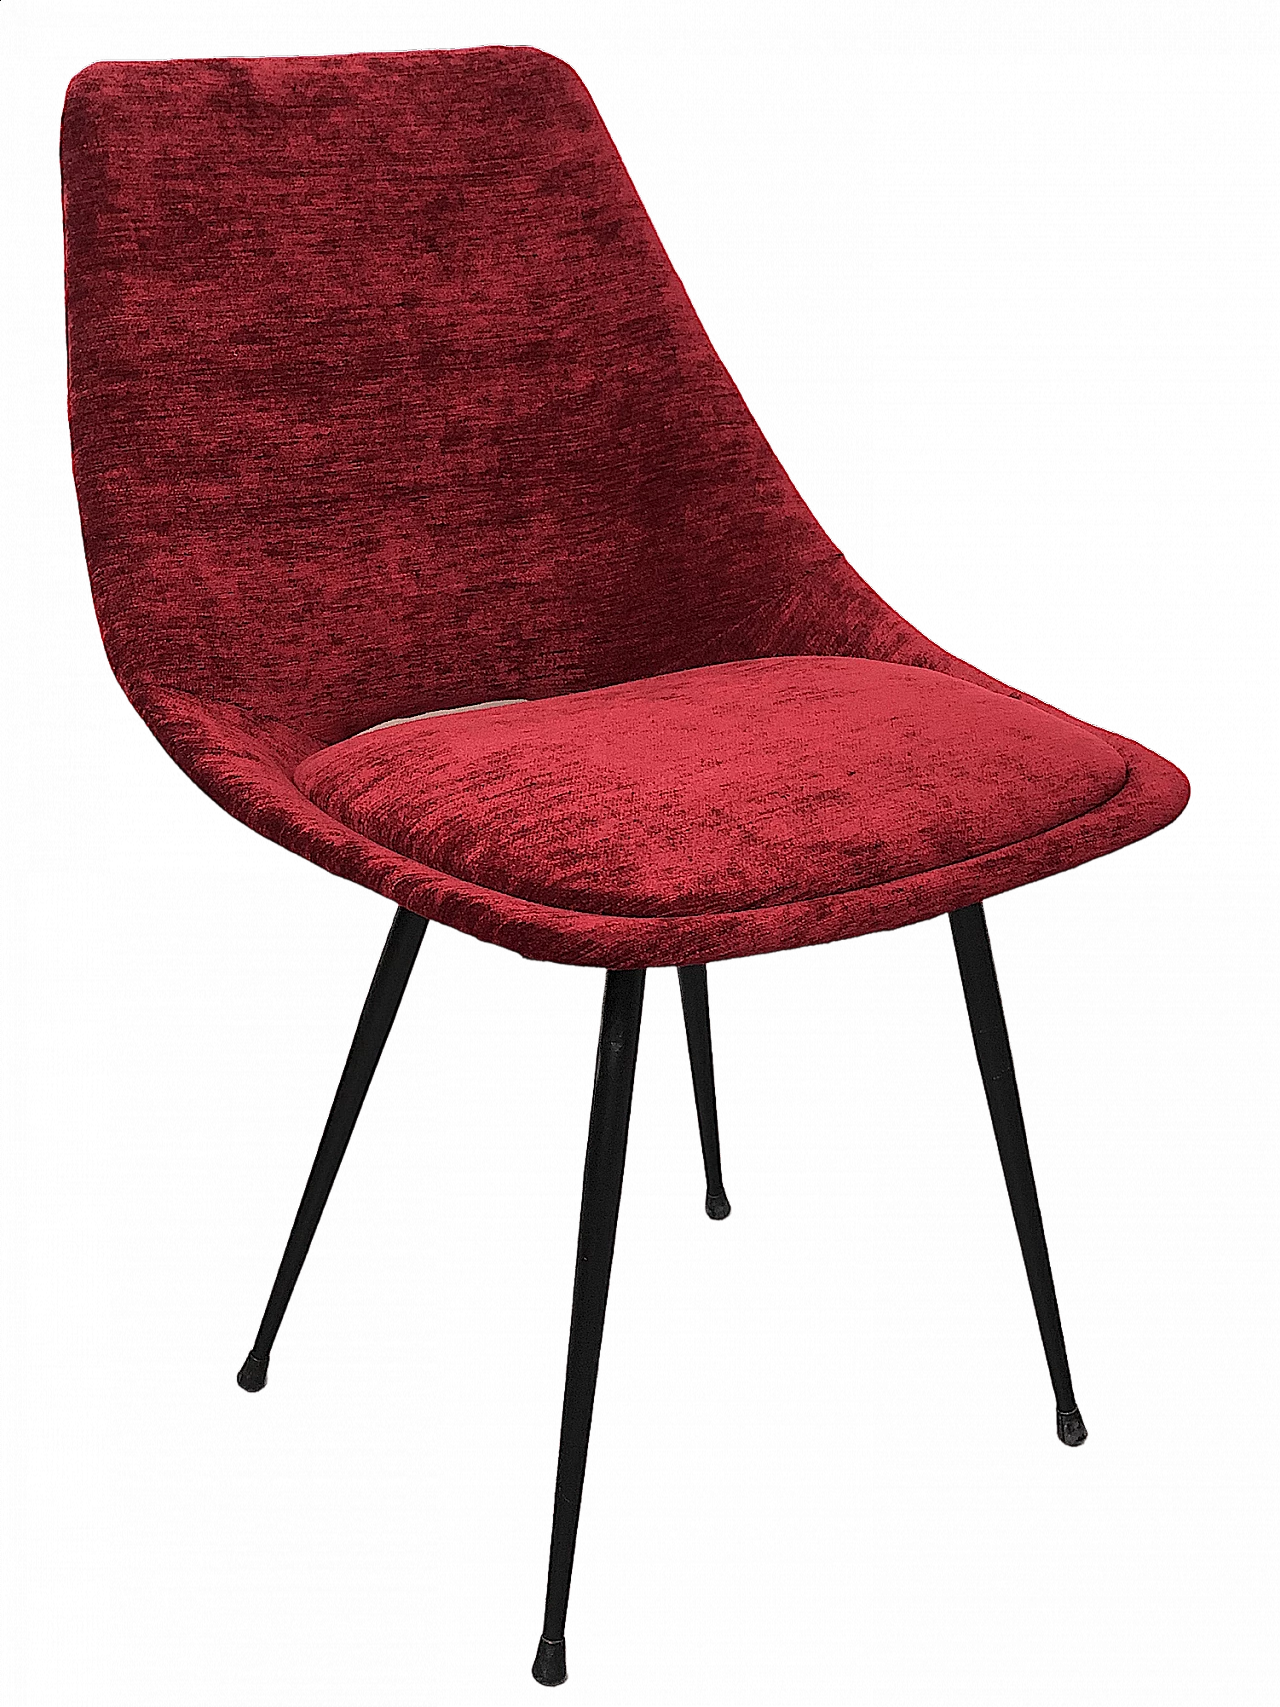 Medea chair model 104 by Vittorio Nobili for F.lli Tagliabue, 1950s 14